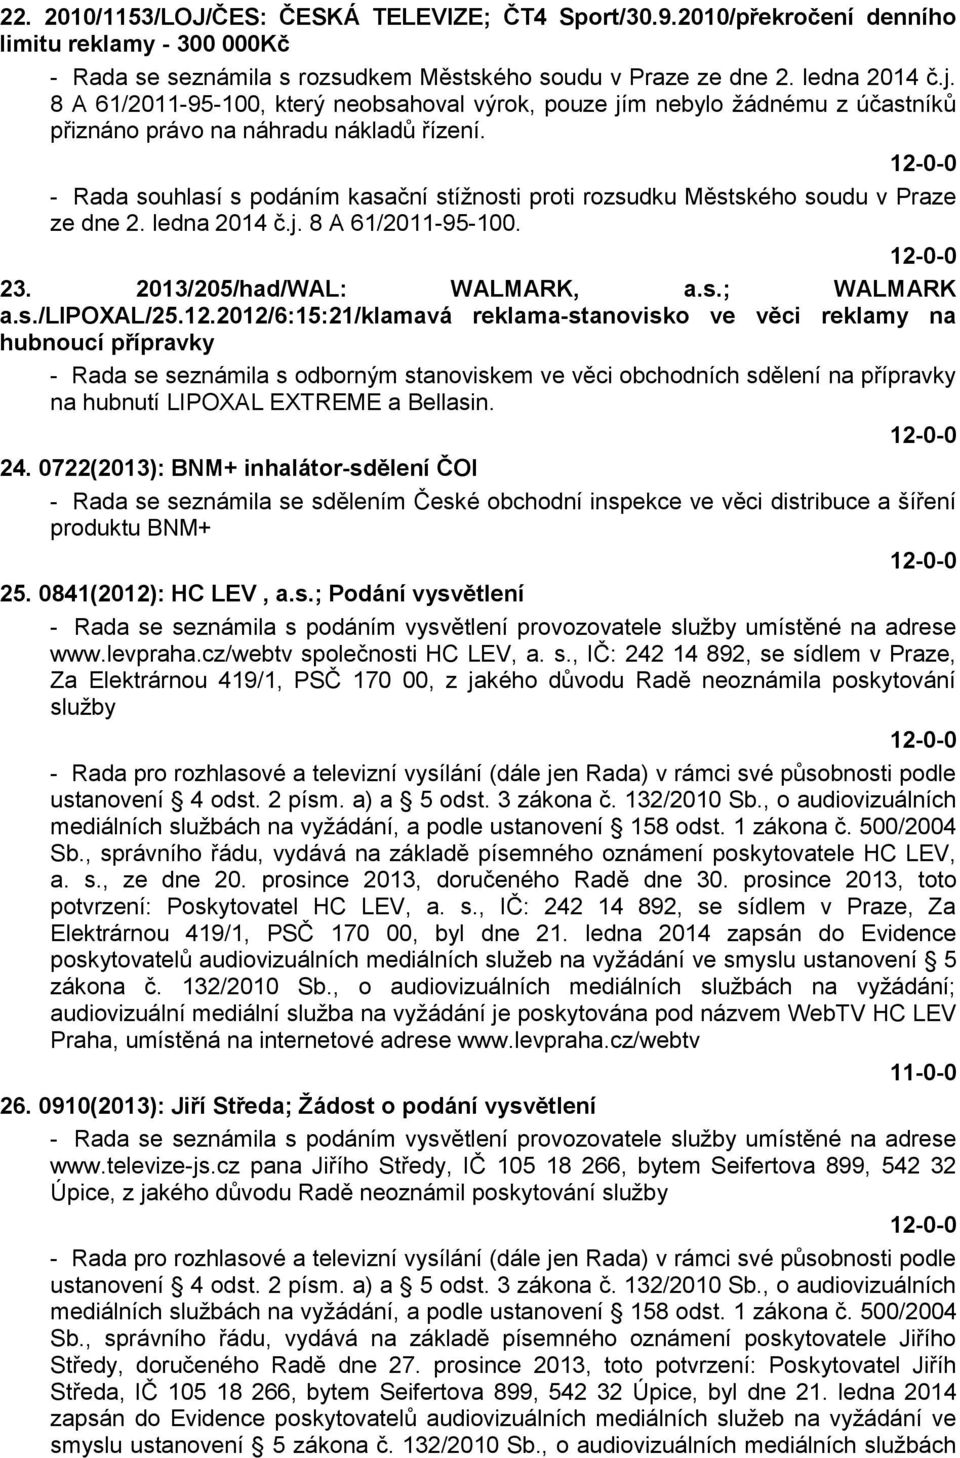 - Rada souhlasí s podáním kasační stížnosti proti rozsudku Městského soudu v Praze ze dne 2. ledna 2014 č.j. 8 A 61/2011-95-100. 23. 2013/205/had/WAL: WALMARK, a.s.; WALMARK a.s./lipoxal/25.12.